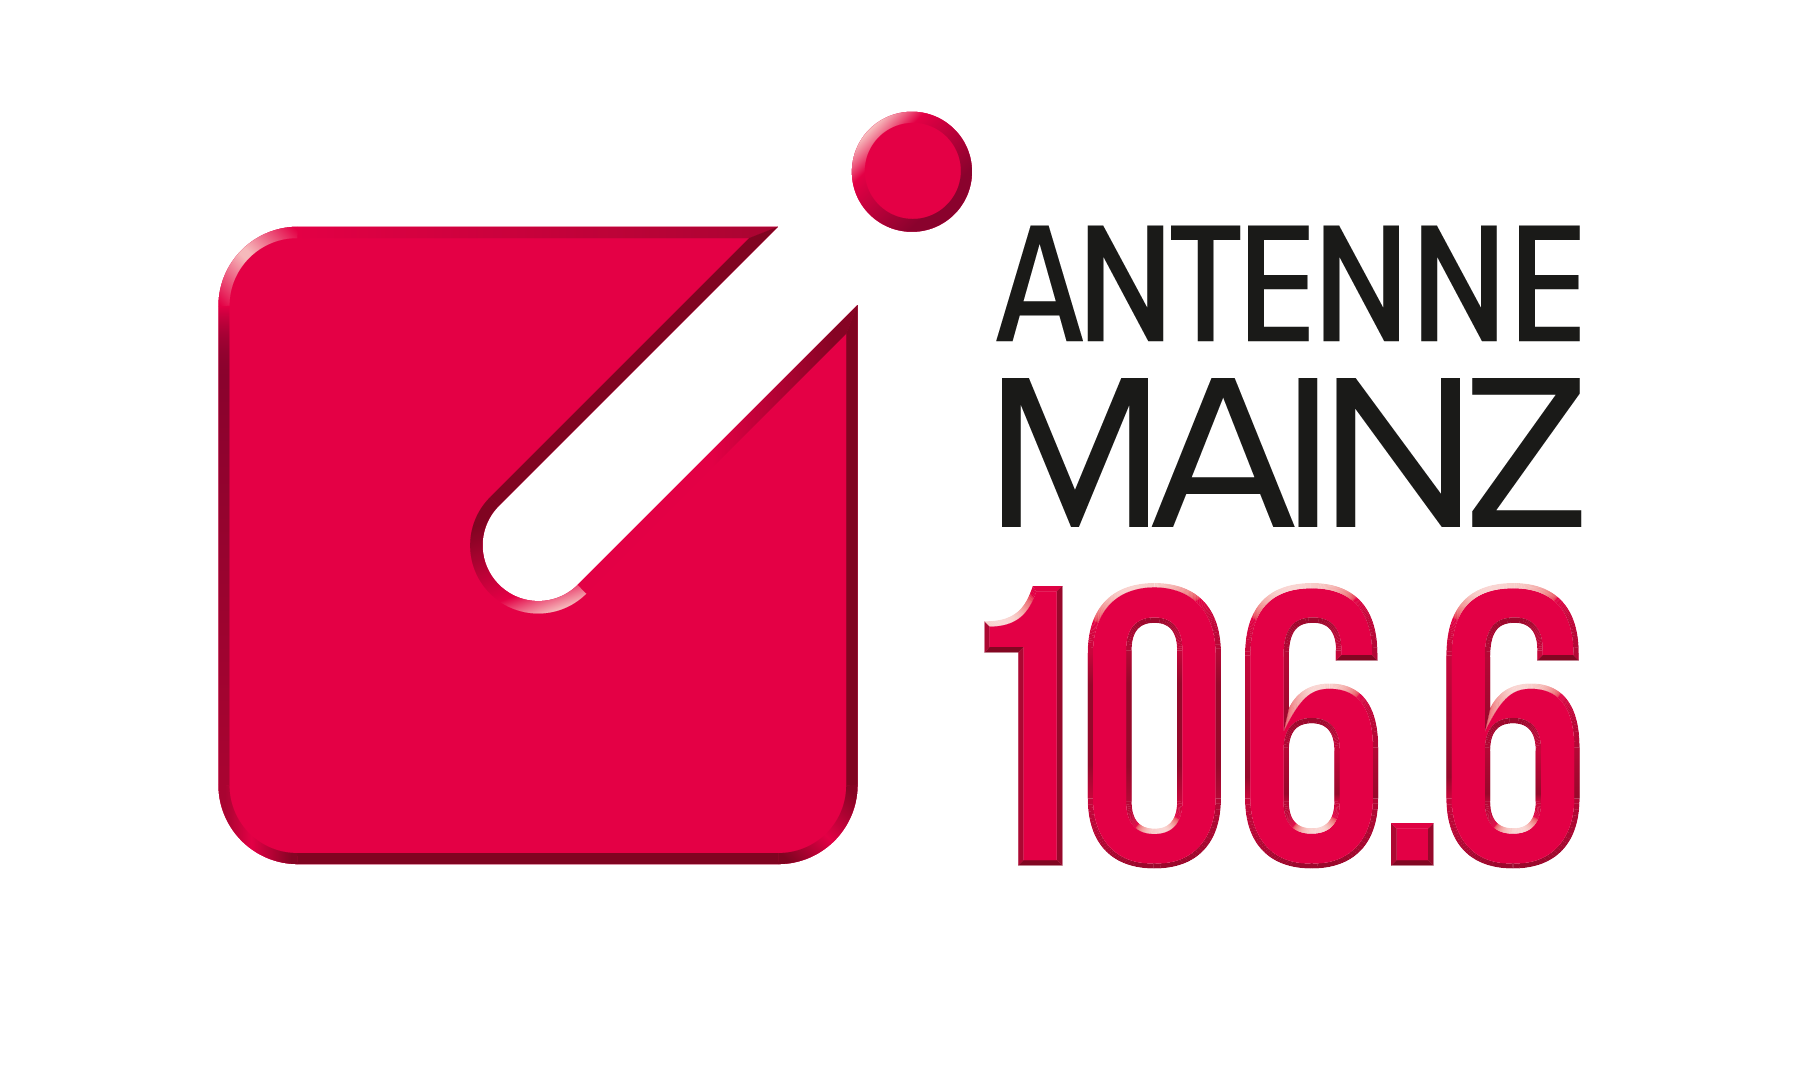 Antenne Mainz